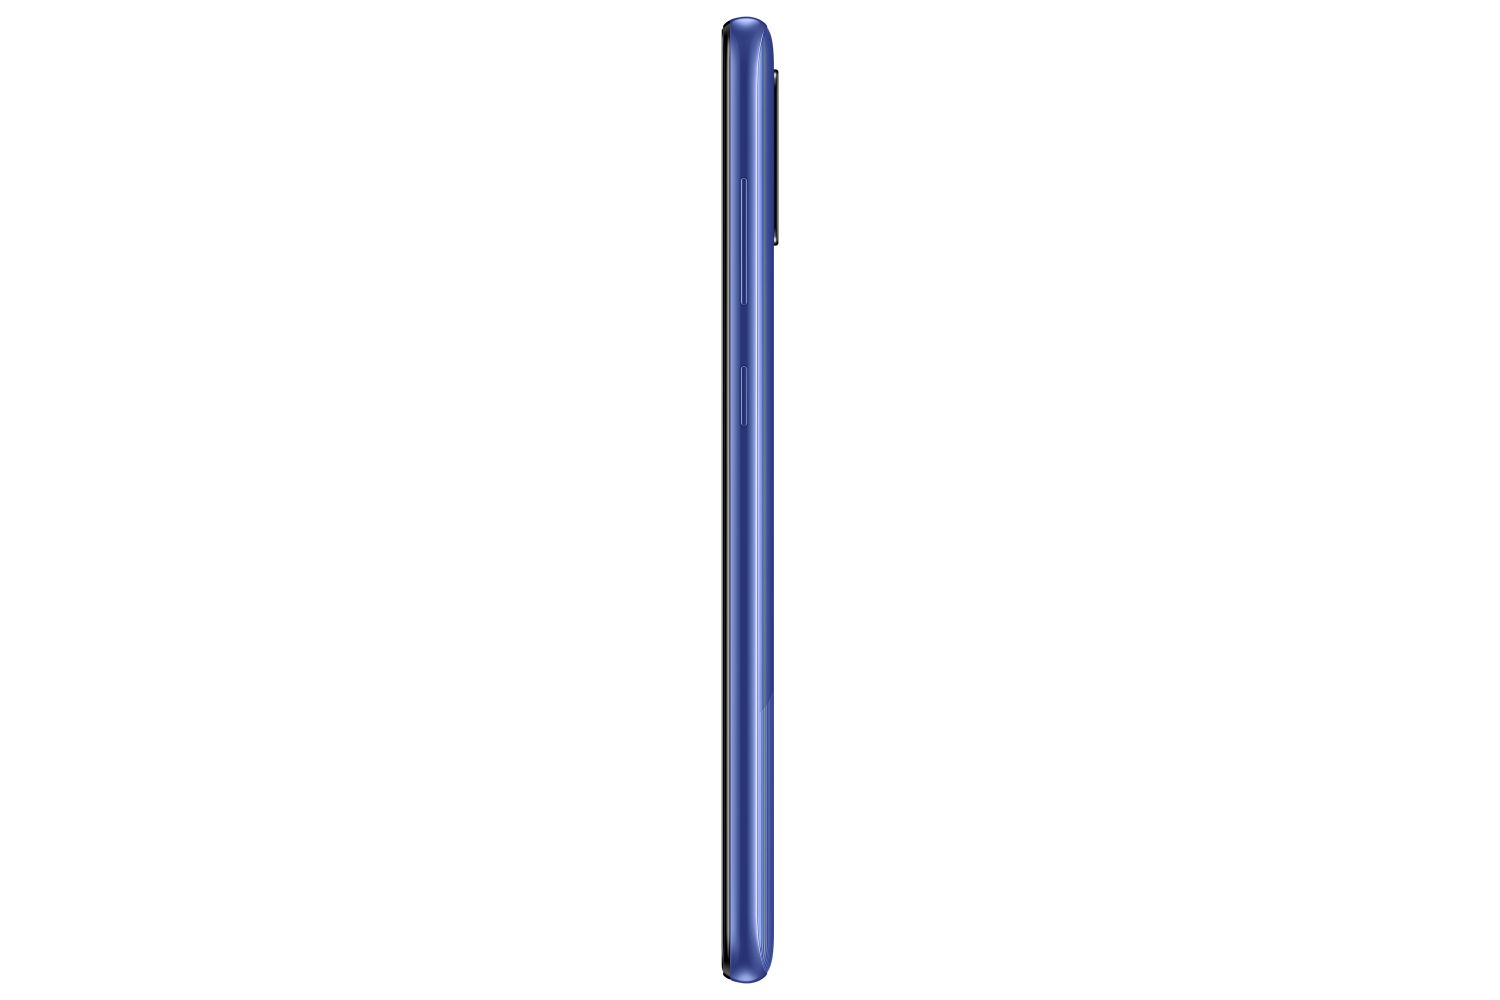 Samsung Galaxy M21 64gb Blue Sm